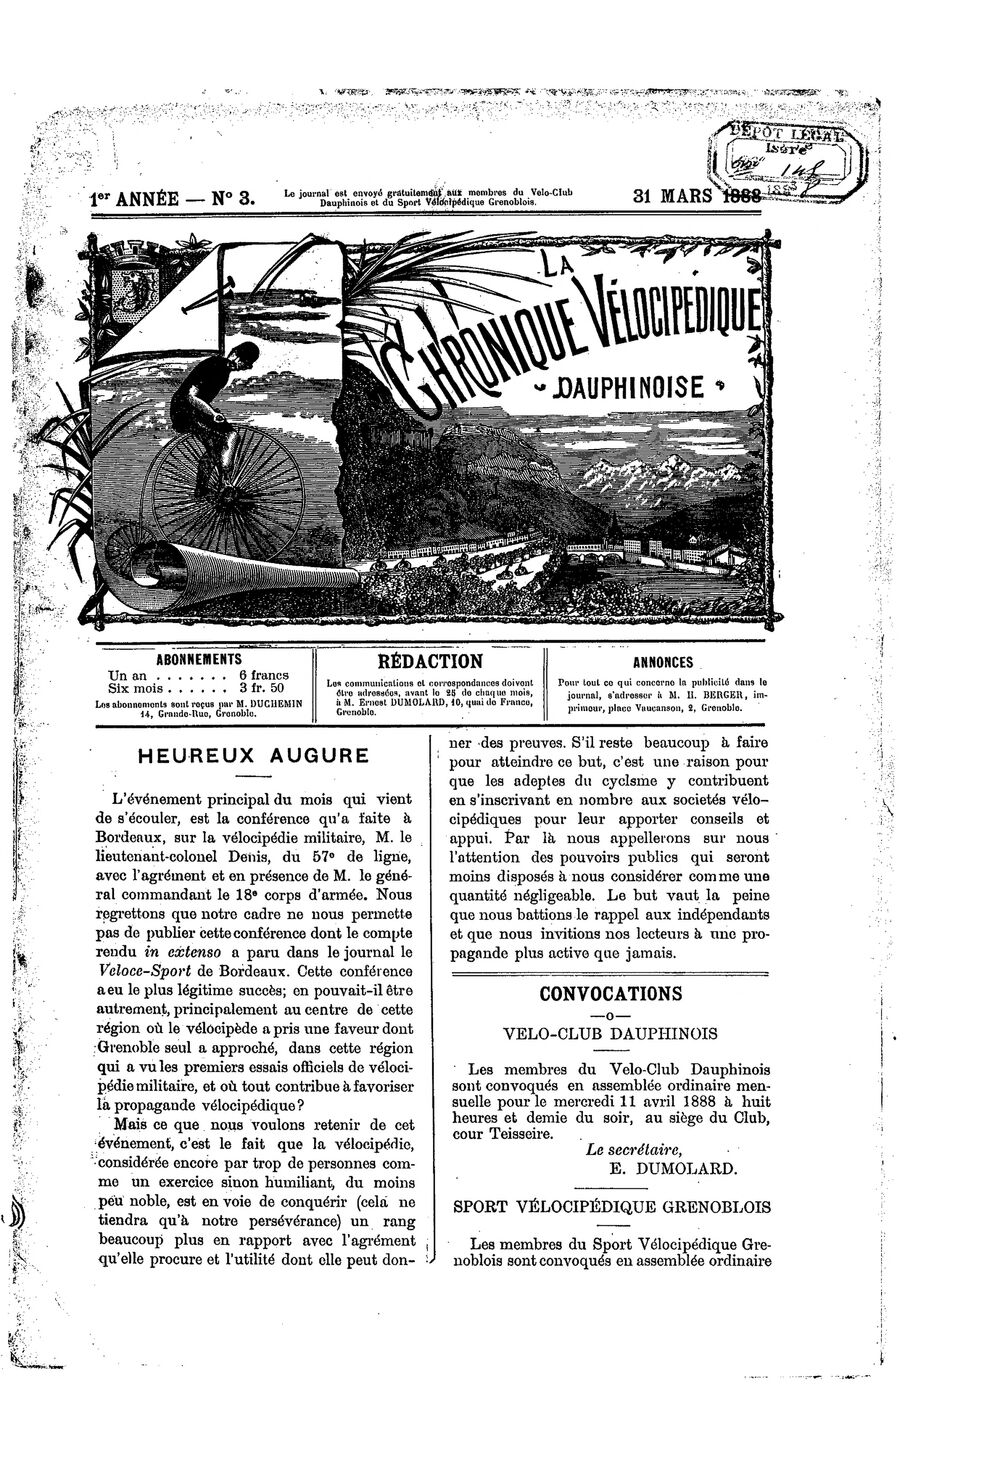 La Chronique vélocipédique dauphinoise / l'imprimeur-gérant b : H. Berger - 31 mars 1888